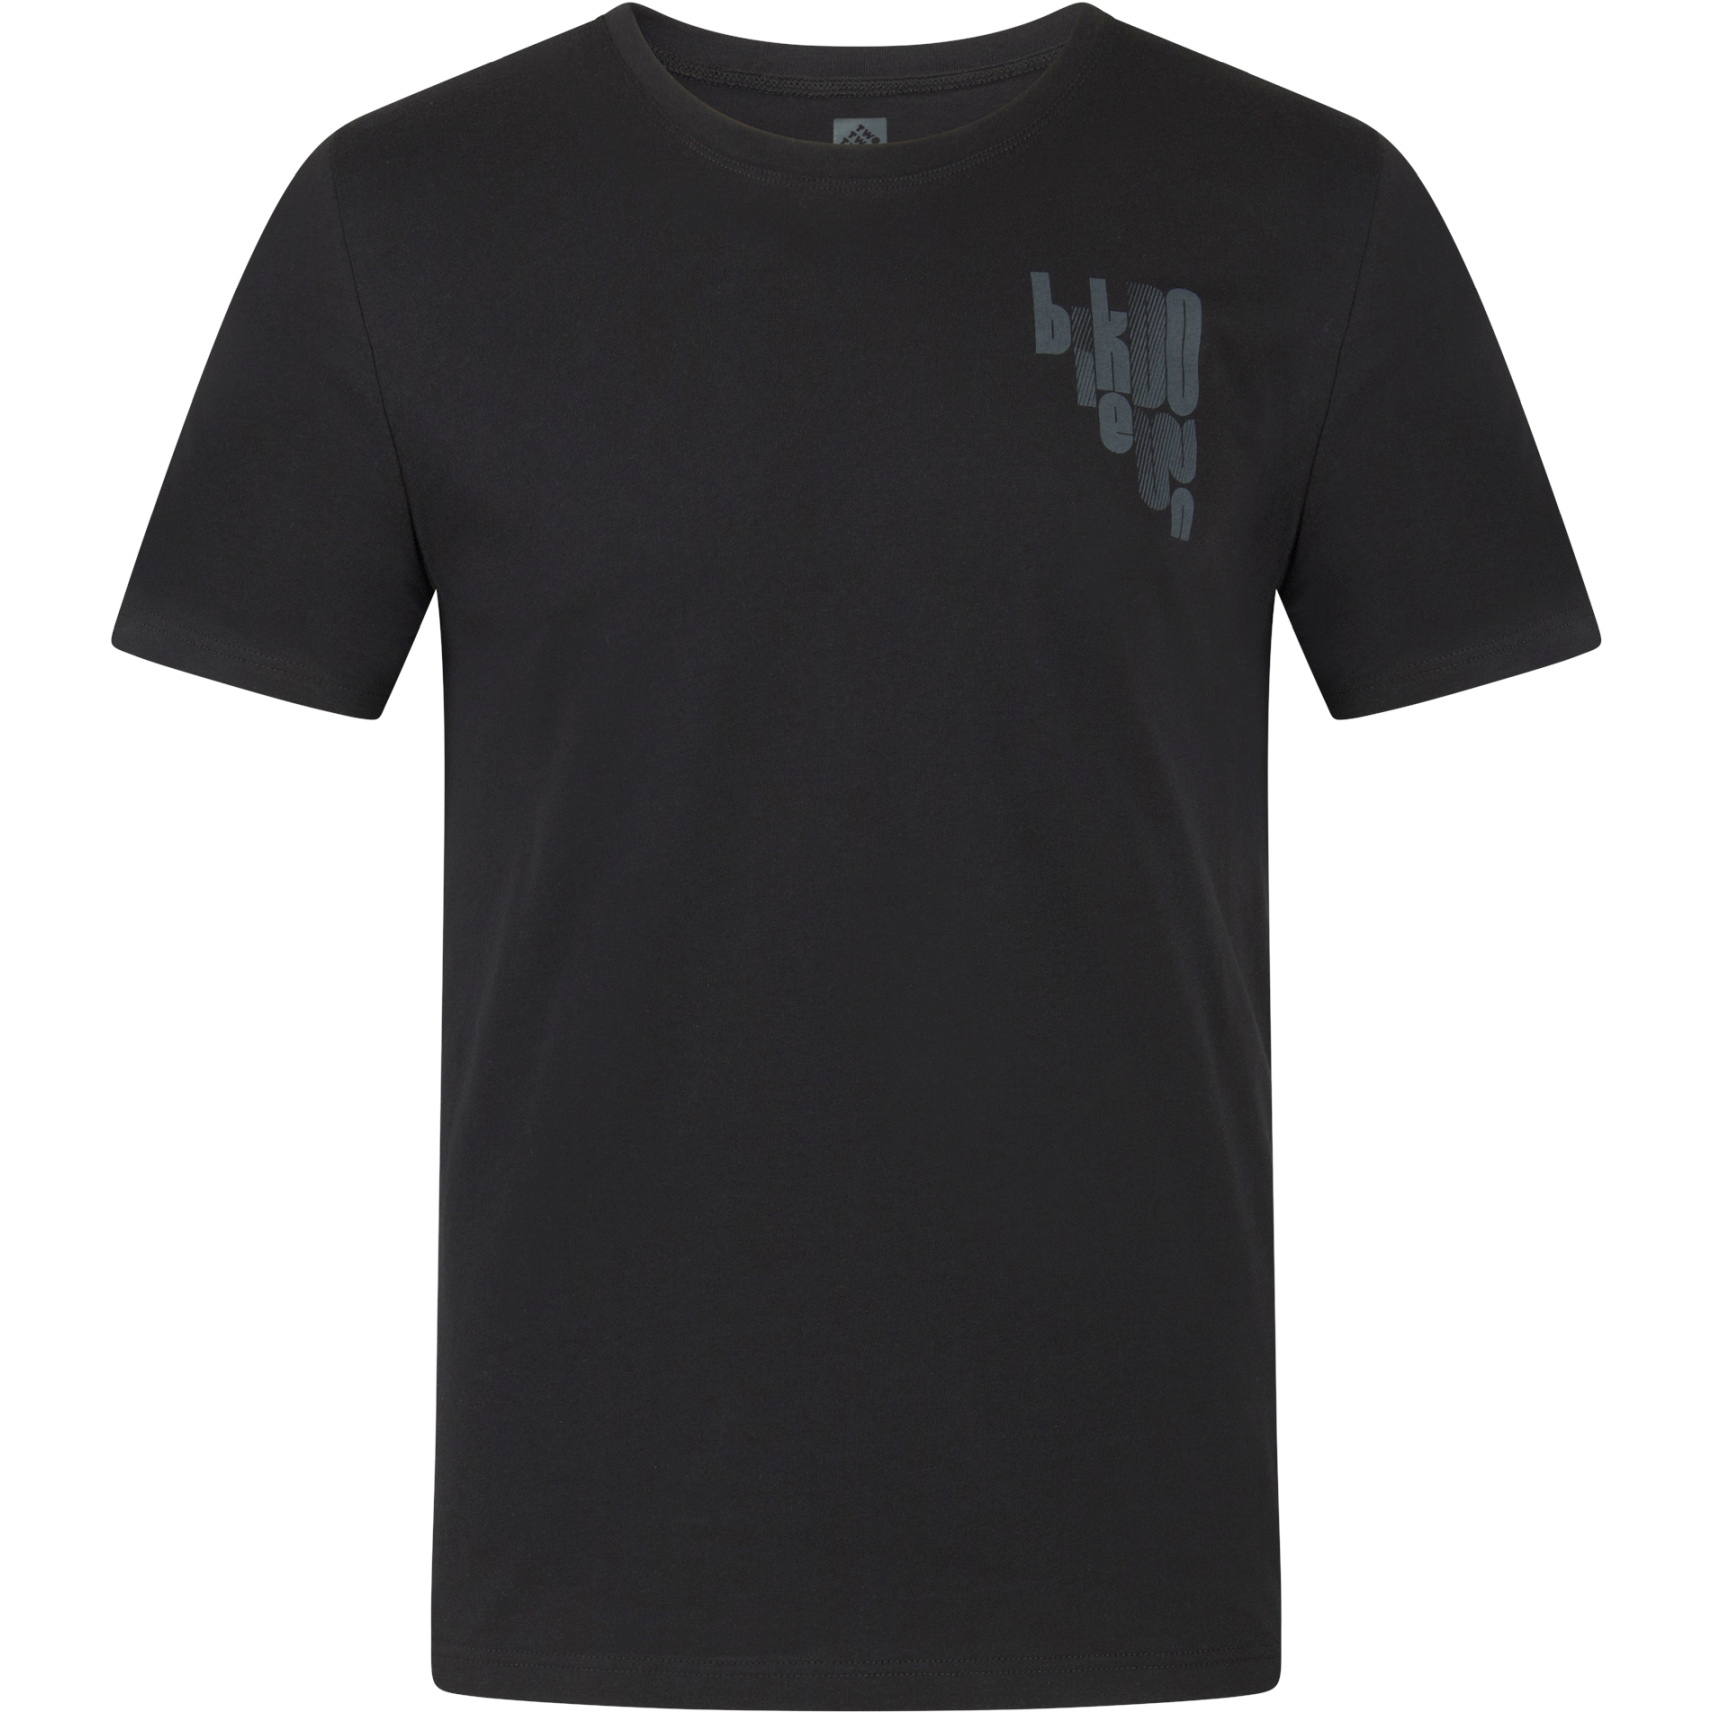 Produktbild von triple2 Laag Evo T-Shirt - moonless night